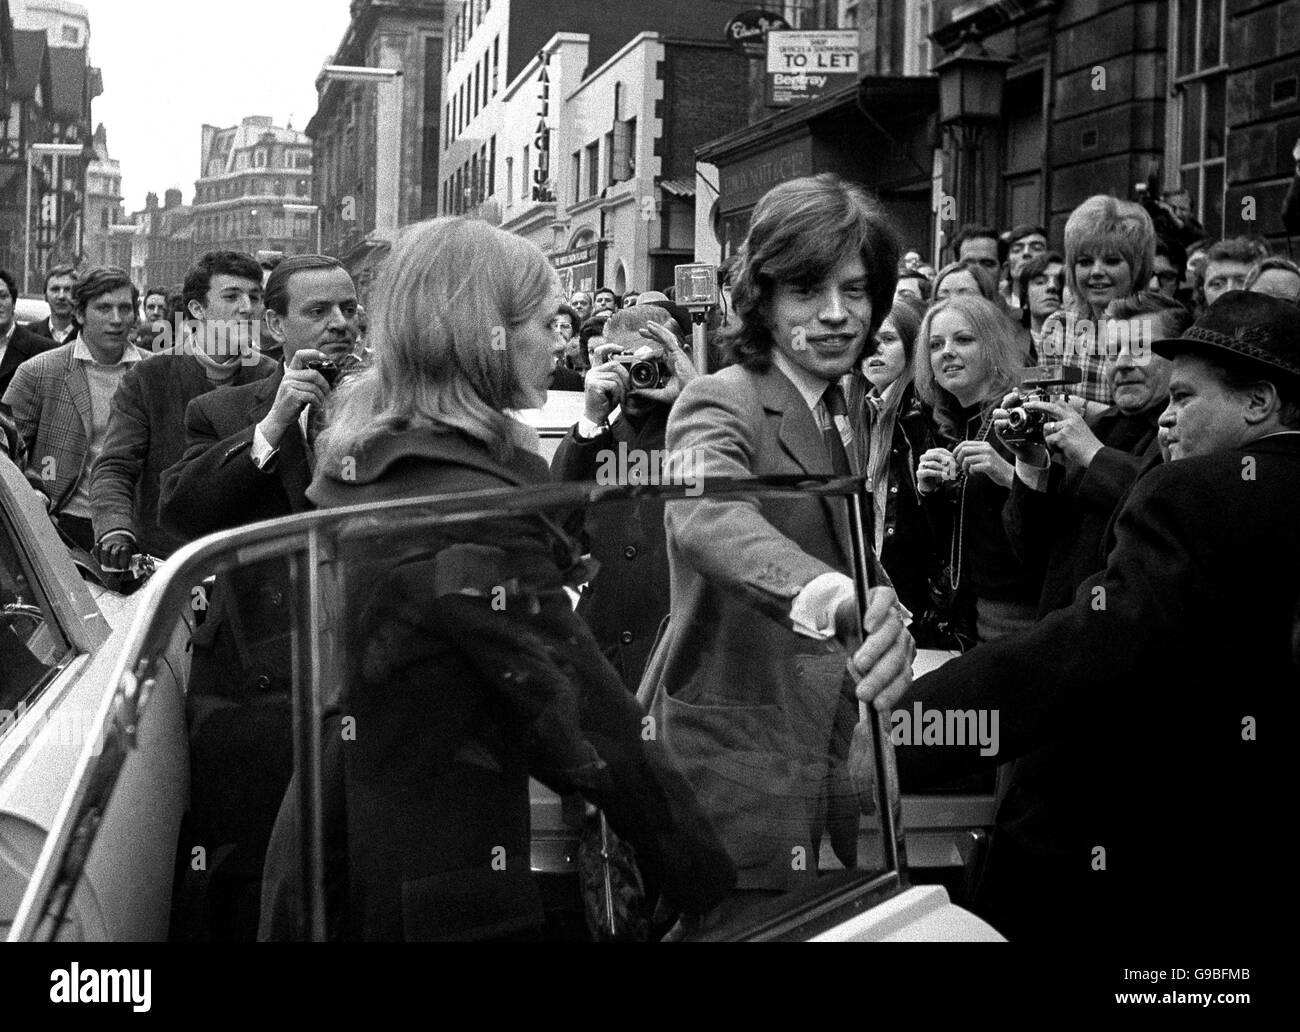 Mick Jagger von den Rolling Stones und die Schauspielerin Marianna Faithfull kommen zur erneuten Anhörung des Falles, in dem sie den Besitz von Cannabisharz bestritten haben. Stockfoto